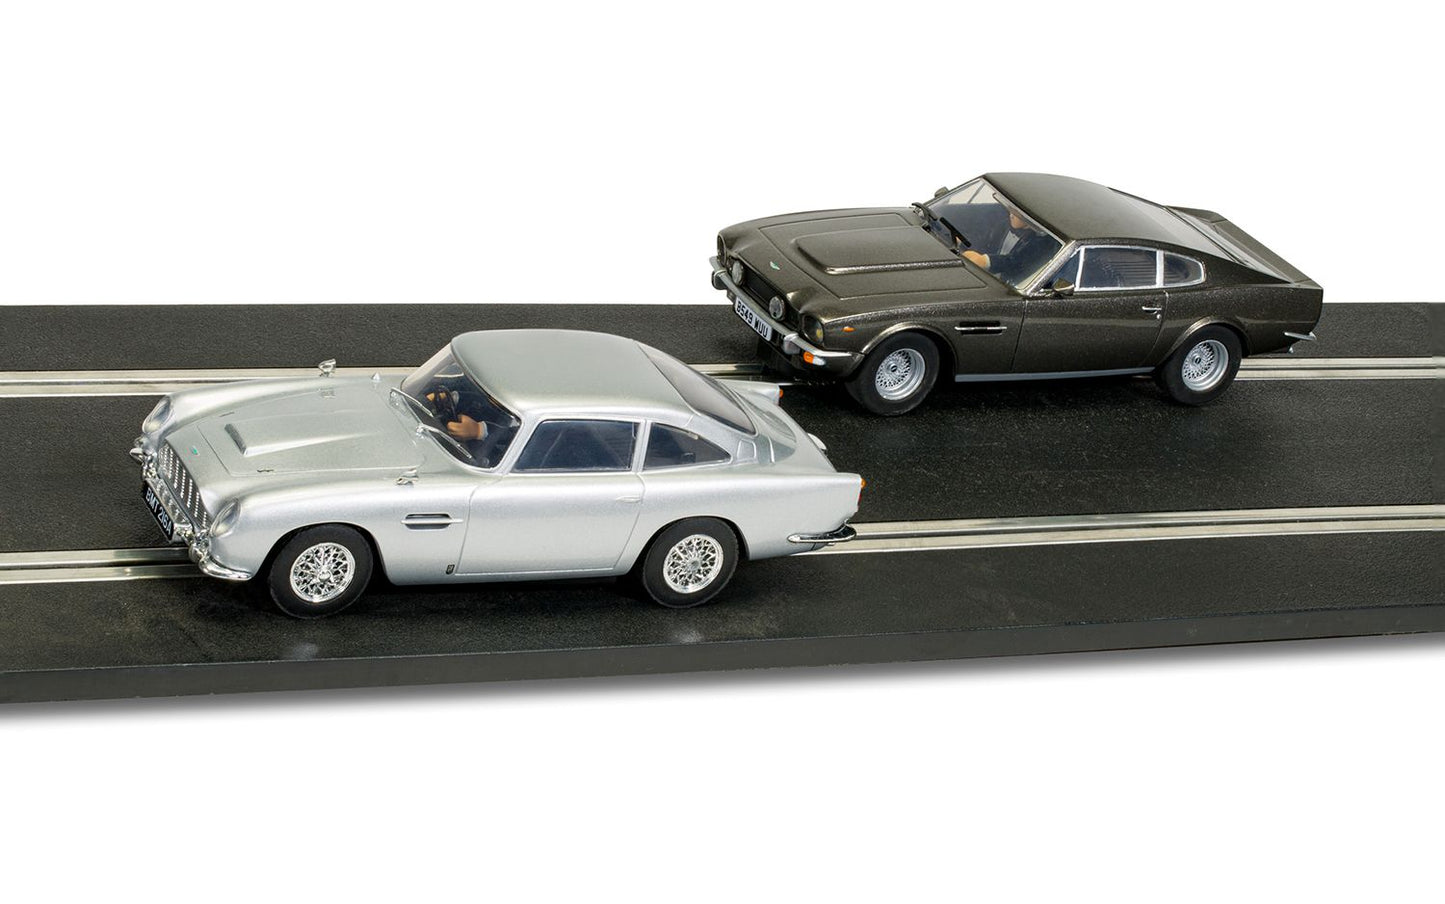 James Bond 007 - Aston Martin DB5 vs Aston Martin V8